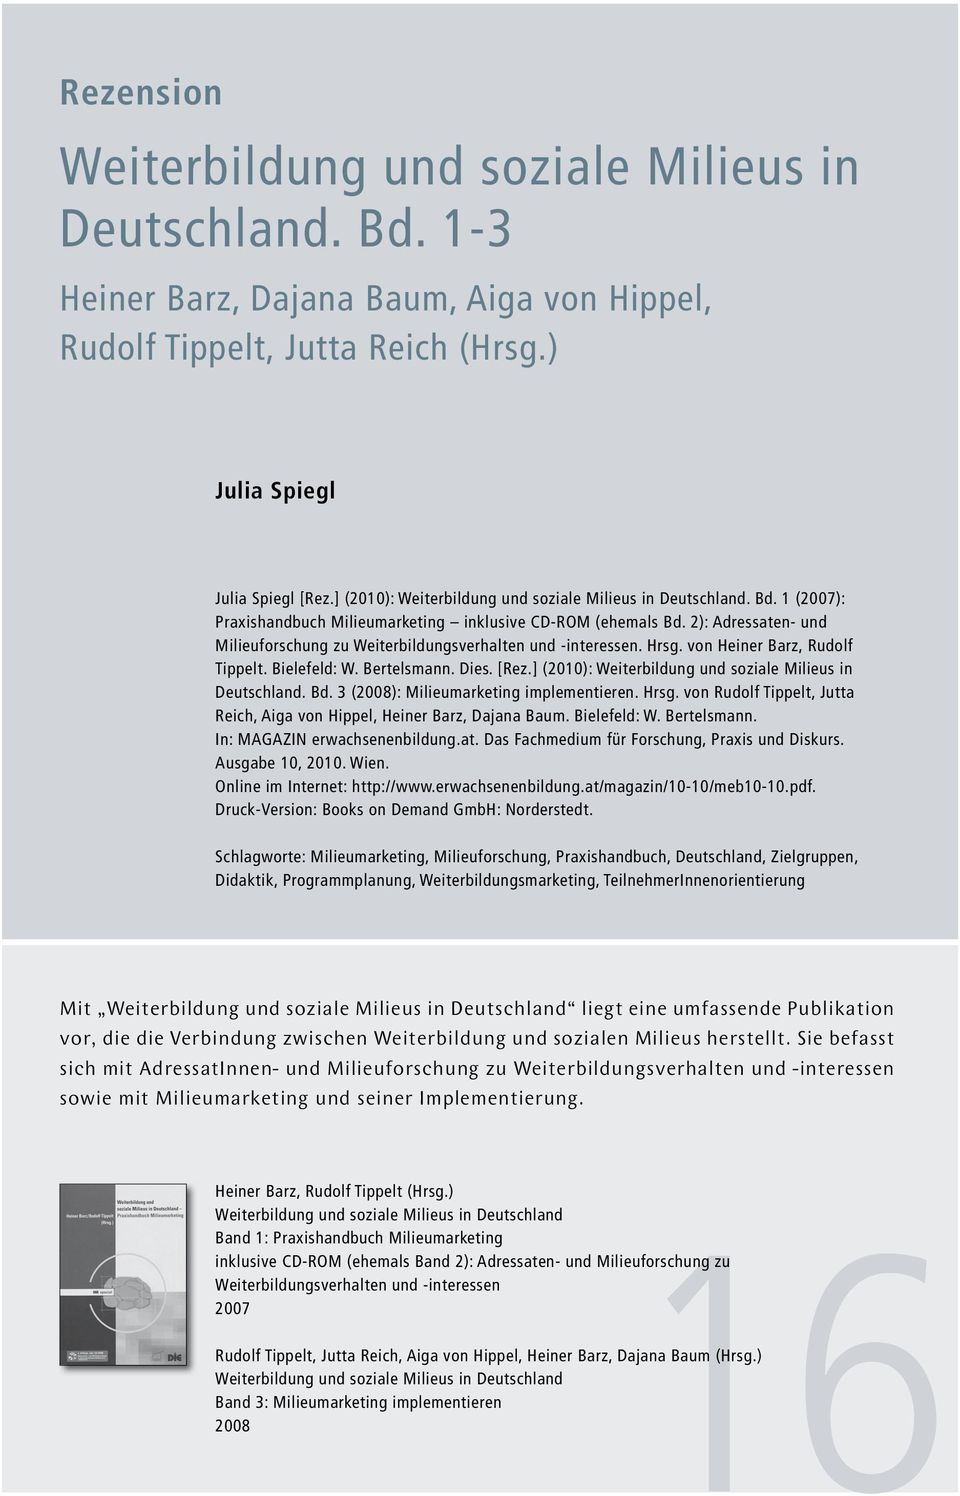 2): Adressaten- und Milieuforschung zu Weiterbildungsverhalten und -interessen. Hrsg. von Heiner Barz, Rudolf Tippelt. Bielefeld: W. Bertelsmann. Dies. [Rez.